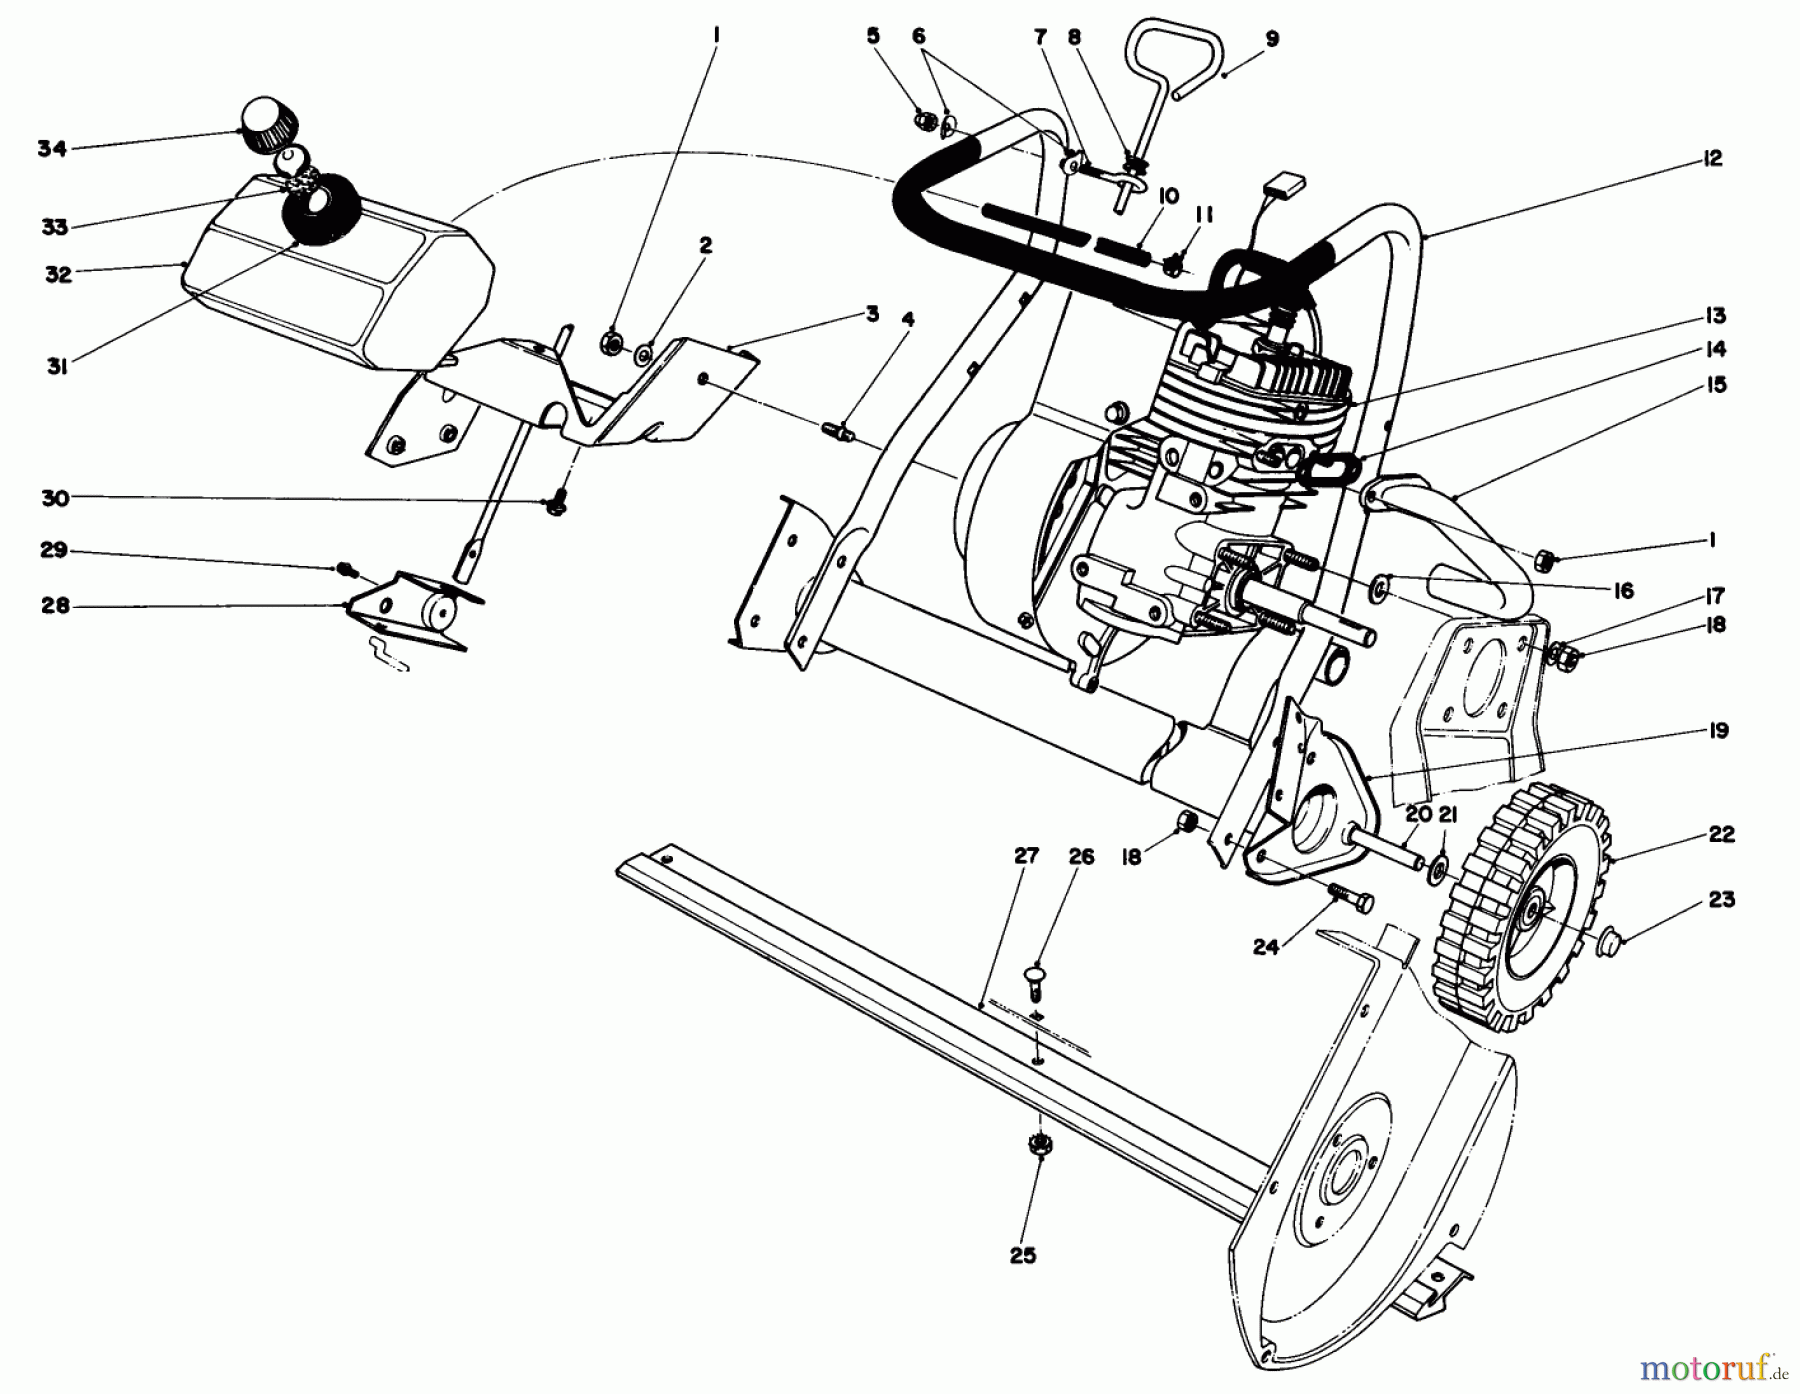  Toro Neu Snow Blowers/Snow Throwers Seite 1 38232 (S-200) - Toro S-200 Snowthrower, 1983 (3000001-3999999) ENGINE ASSEMBLY